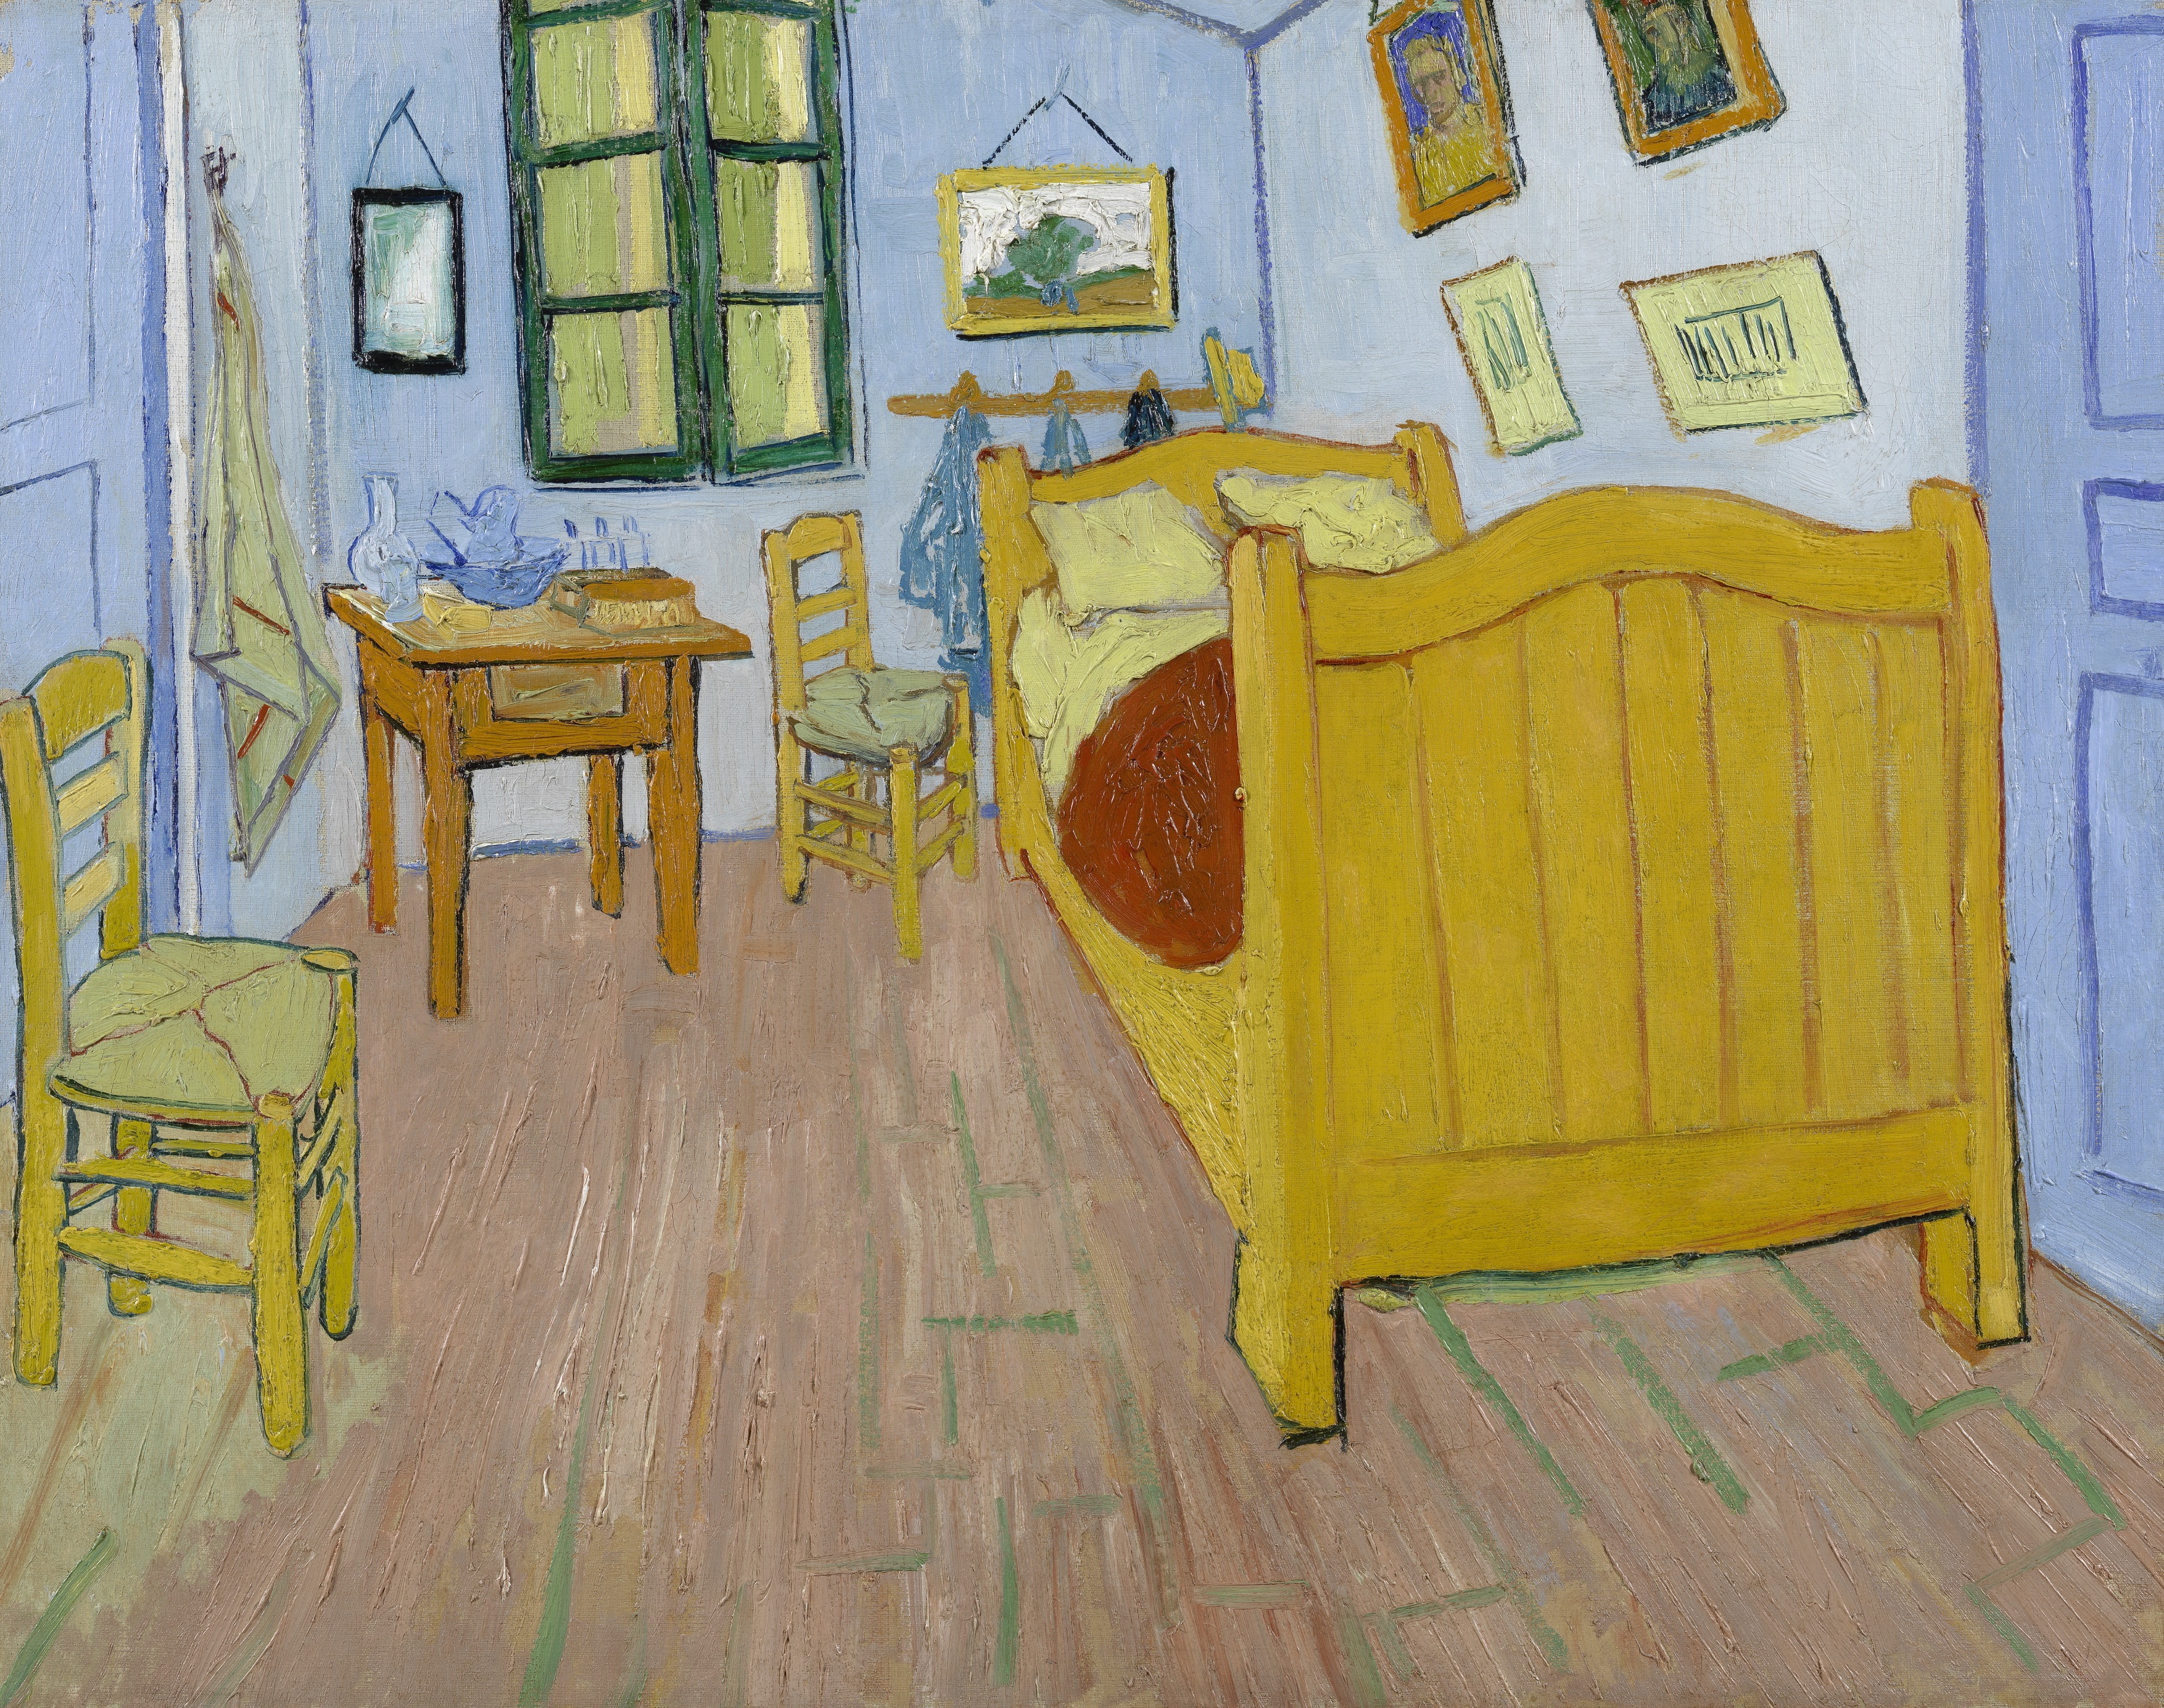 غرفة النوم by فينسنت فان جوخ - أكتوبر 1888م - 72.4 x 91.3 سم 